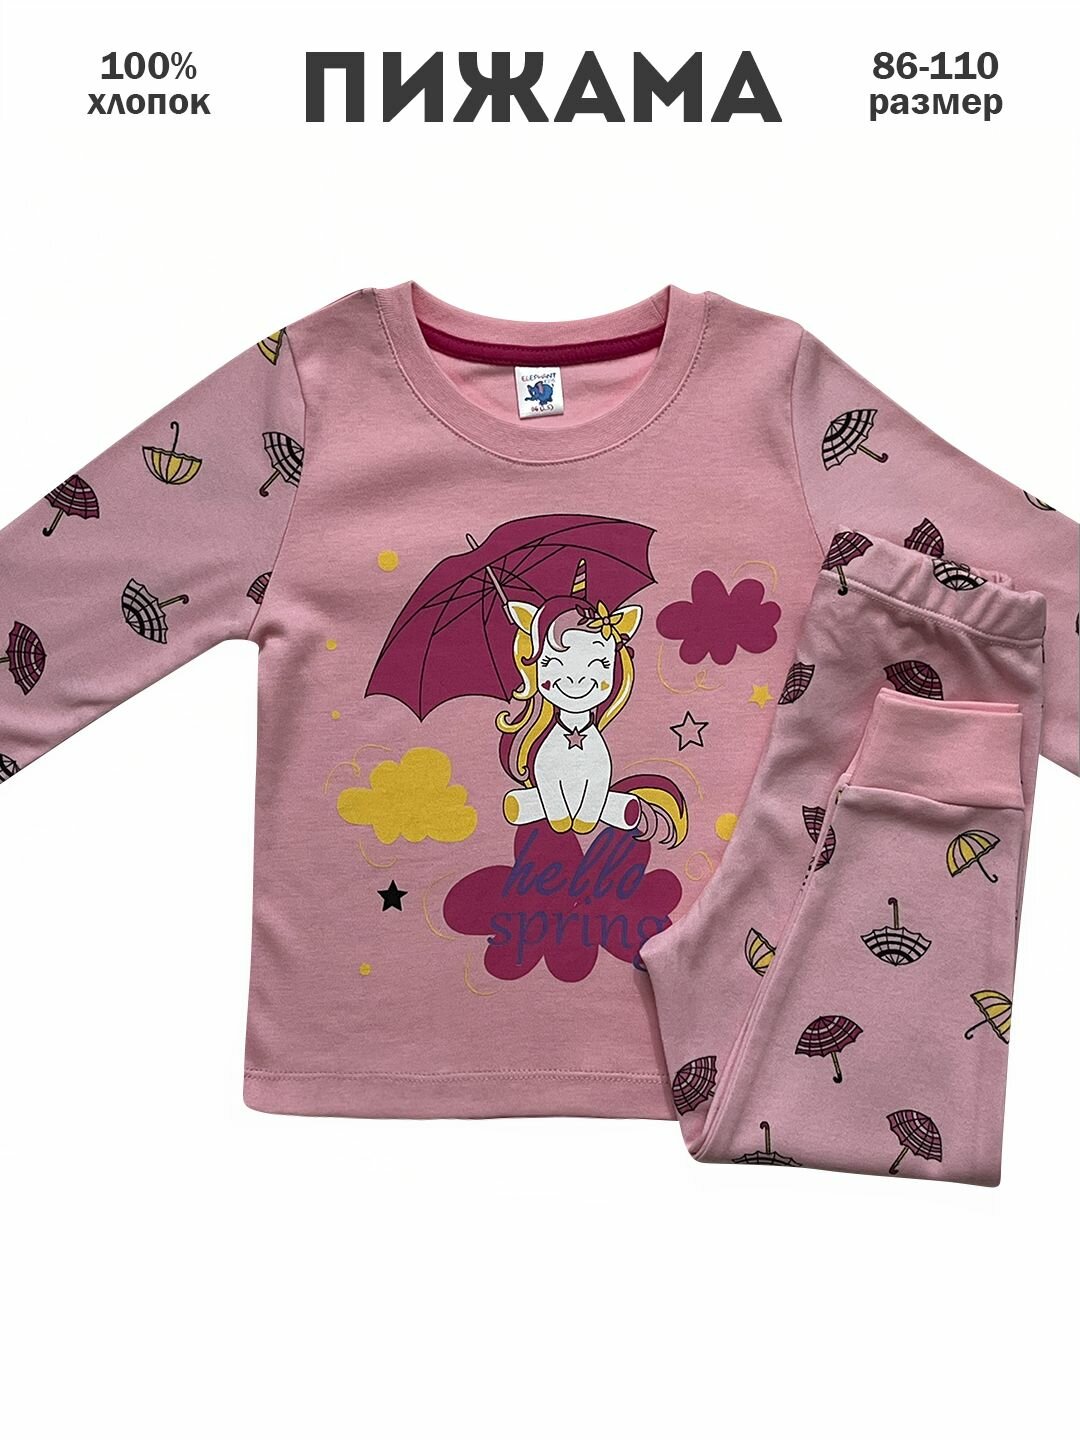 Пижама  ELEPHANT KIDS, размер 92, розовый